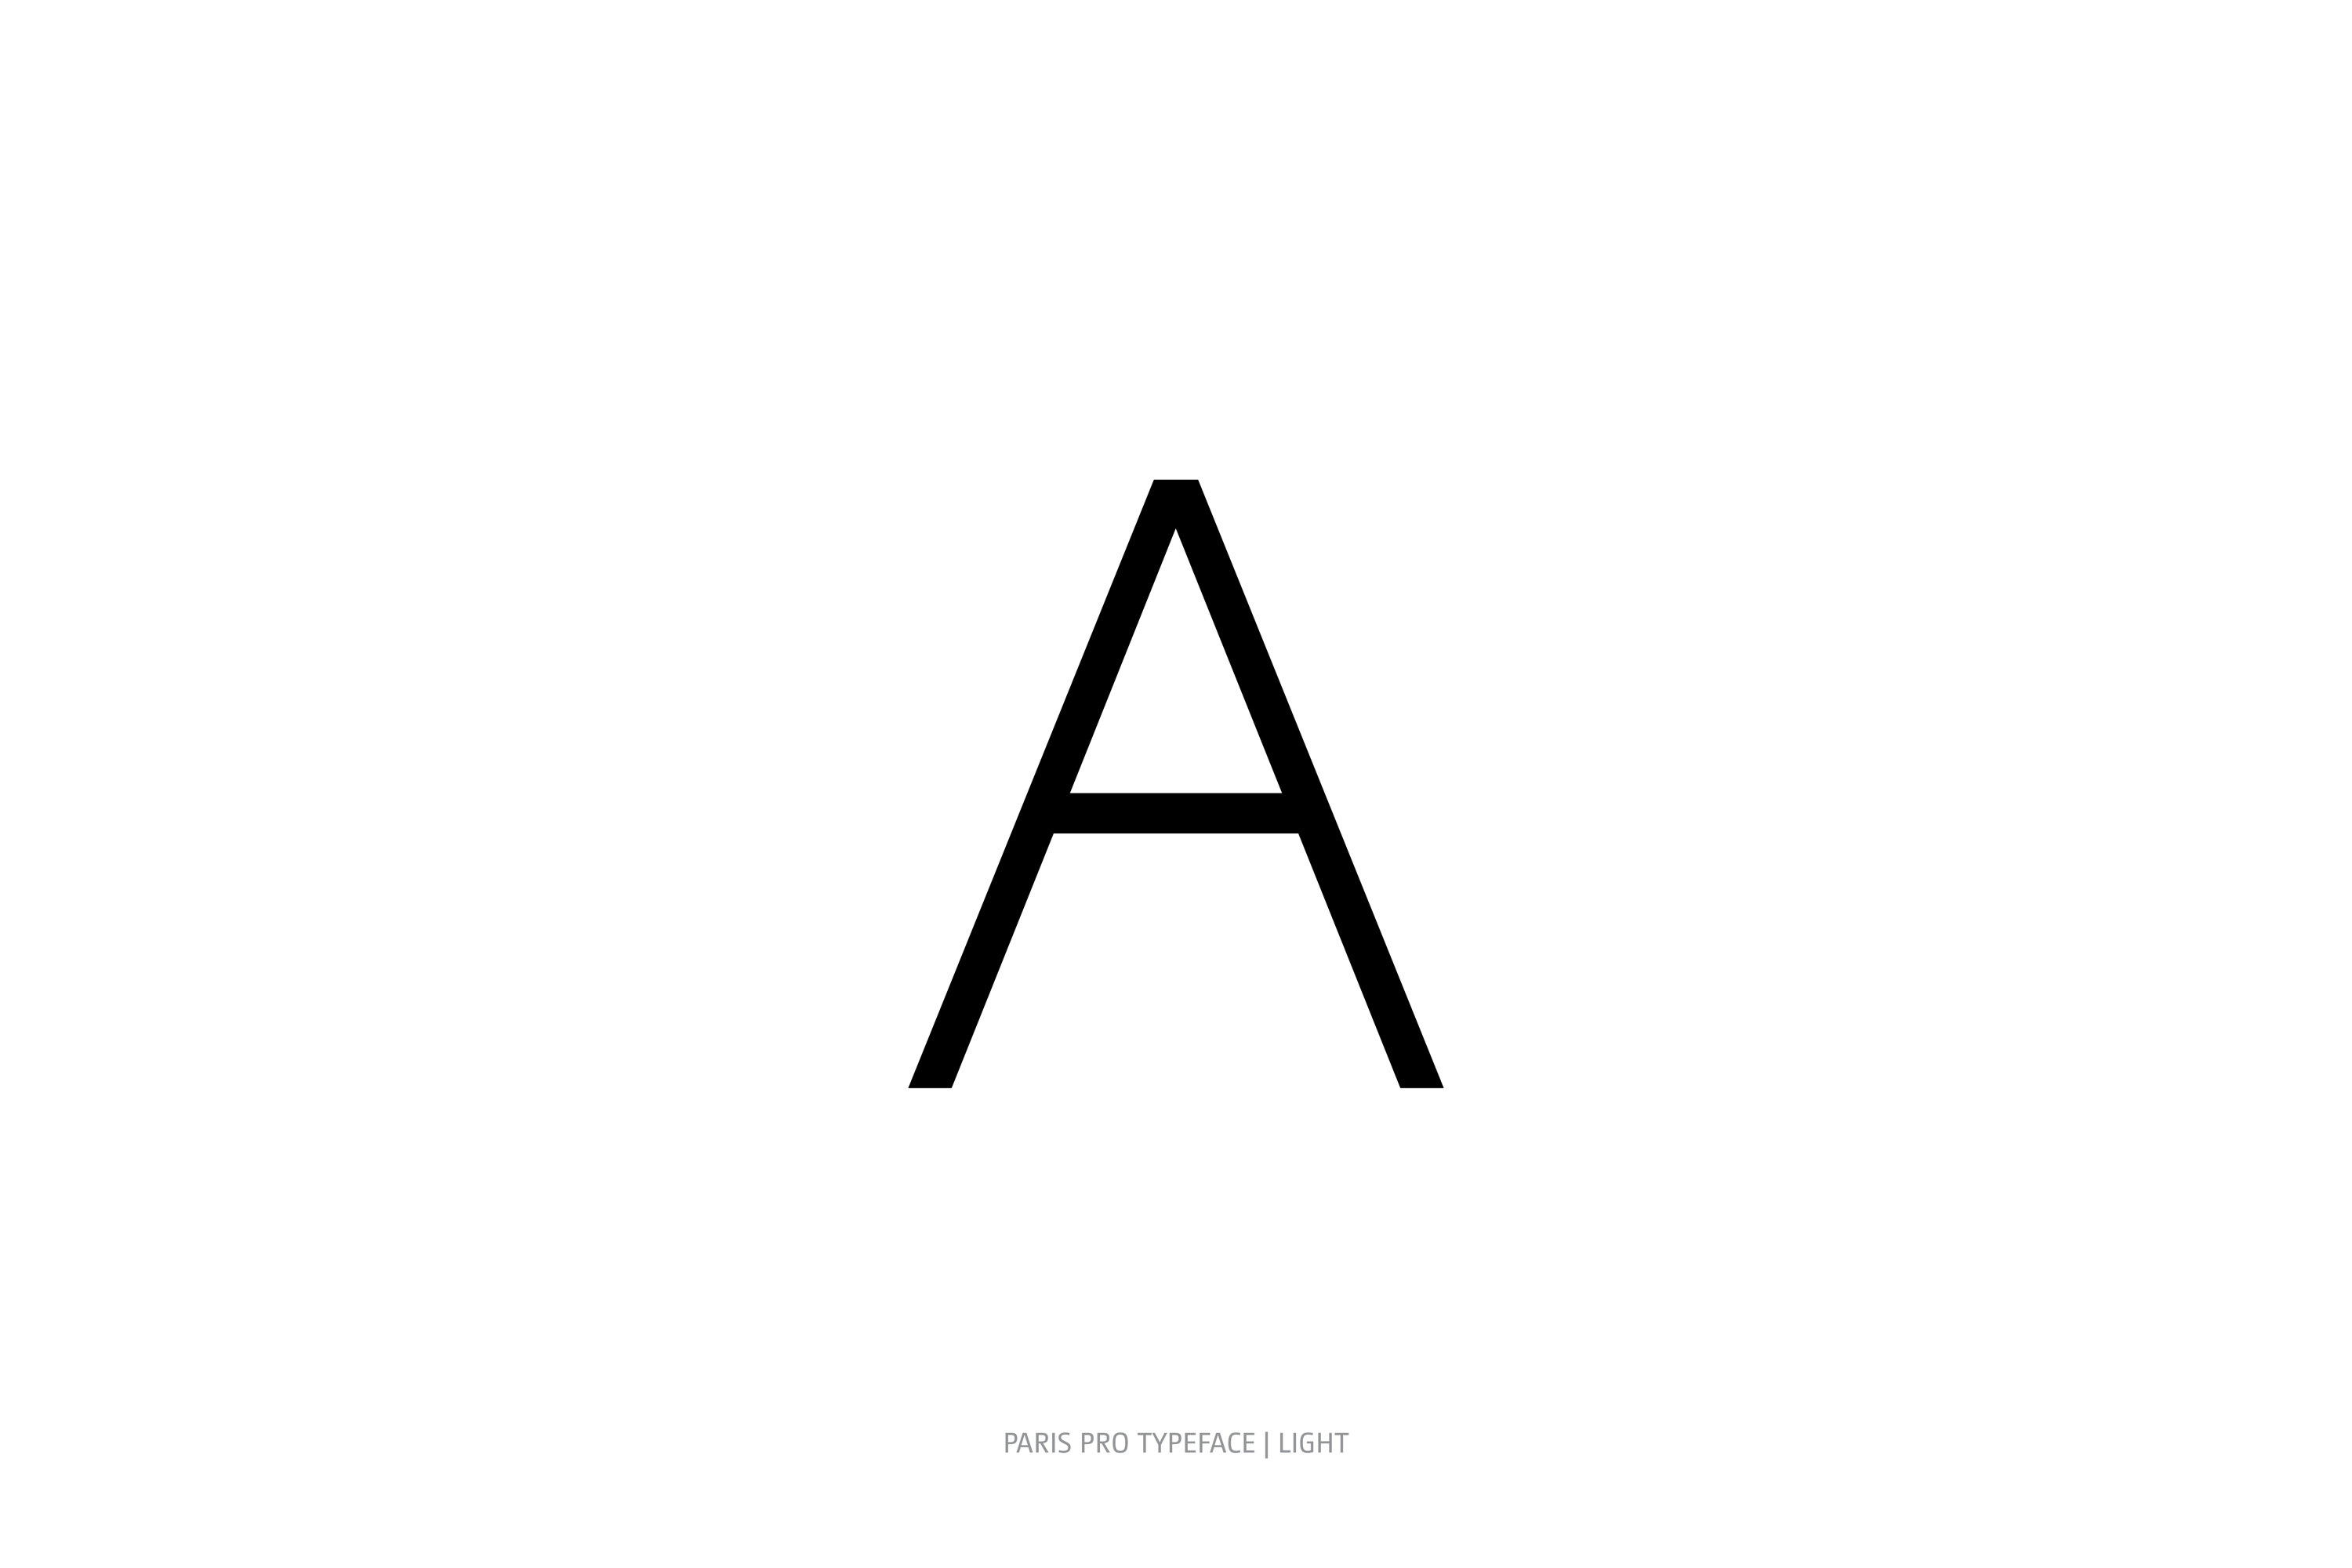 Paris Pro Typeface Light Style A